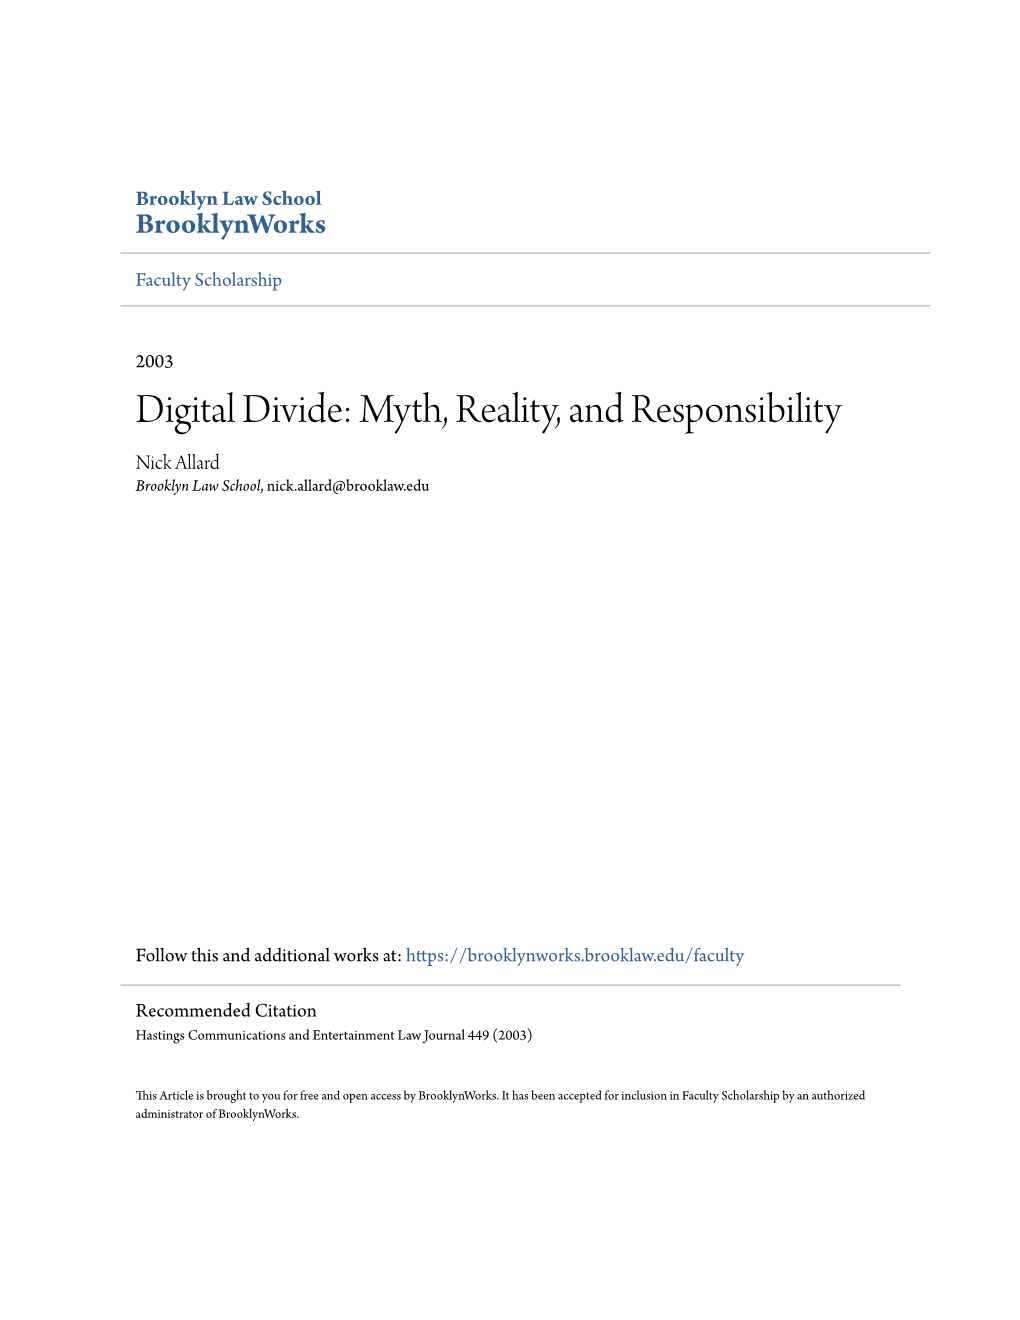 Digital Divide: Myth, Reality, and Responsibility Nick Allard Brooklyn Law School, Nick.Allard@Brooklaw.Edu